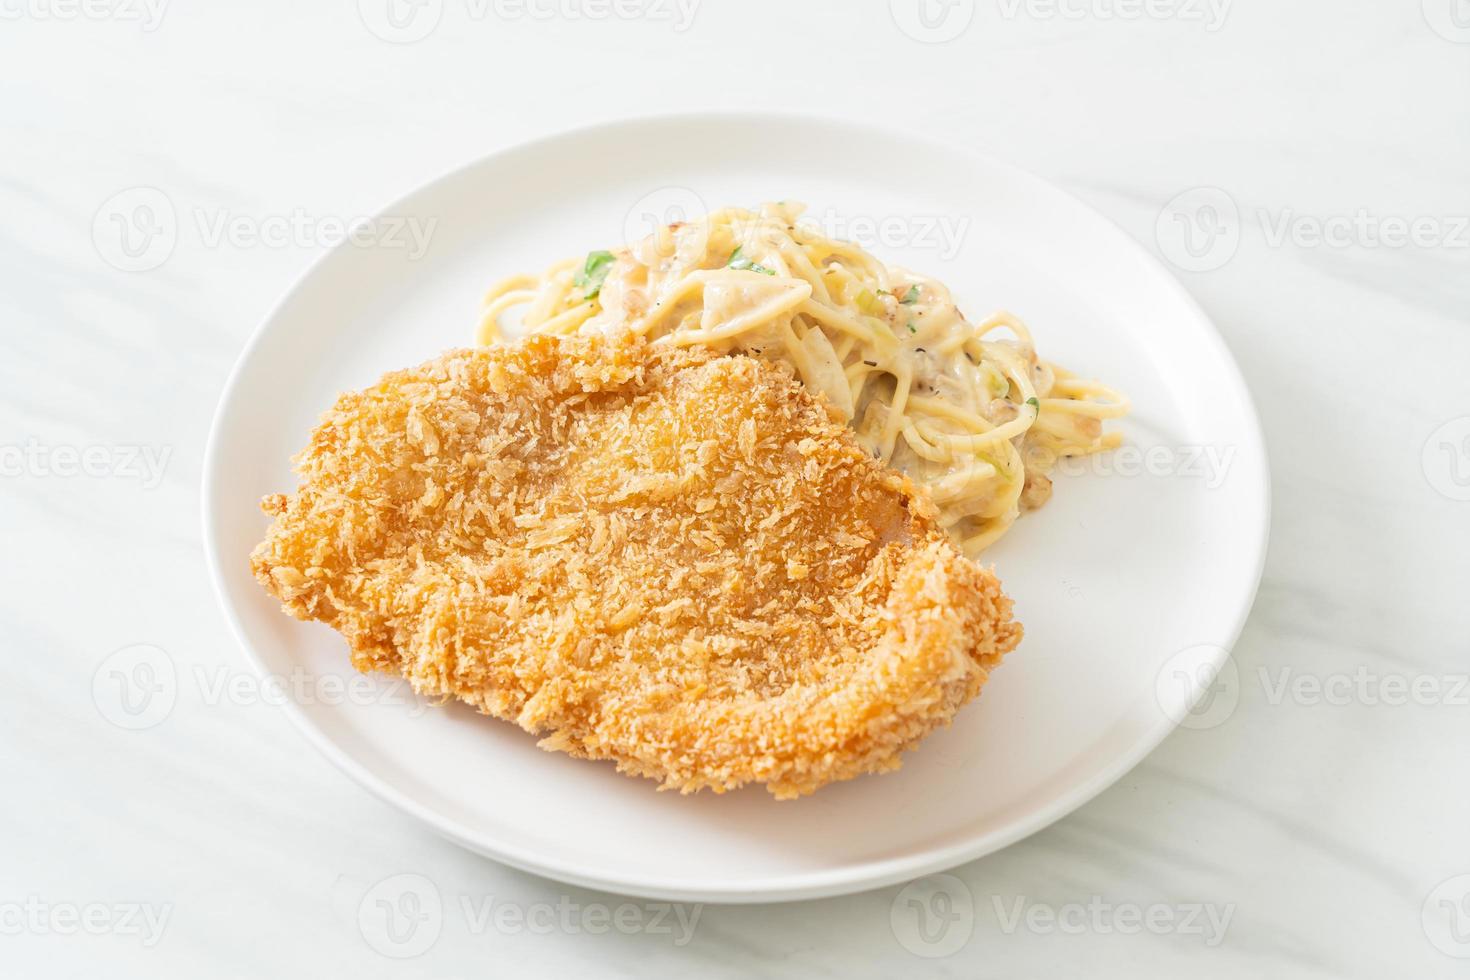 macarrão espaguete caseiro com molho de creme branco com peixe frito foto